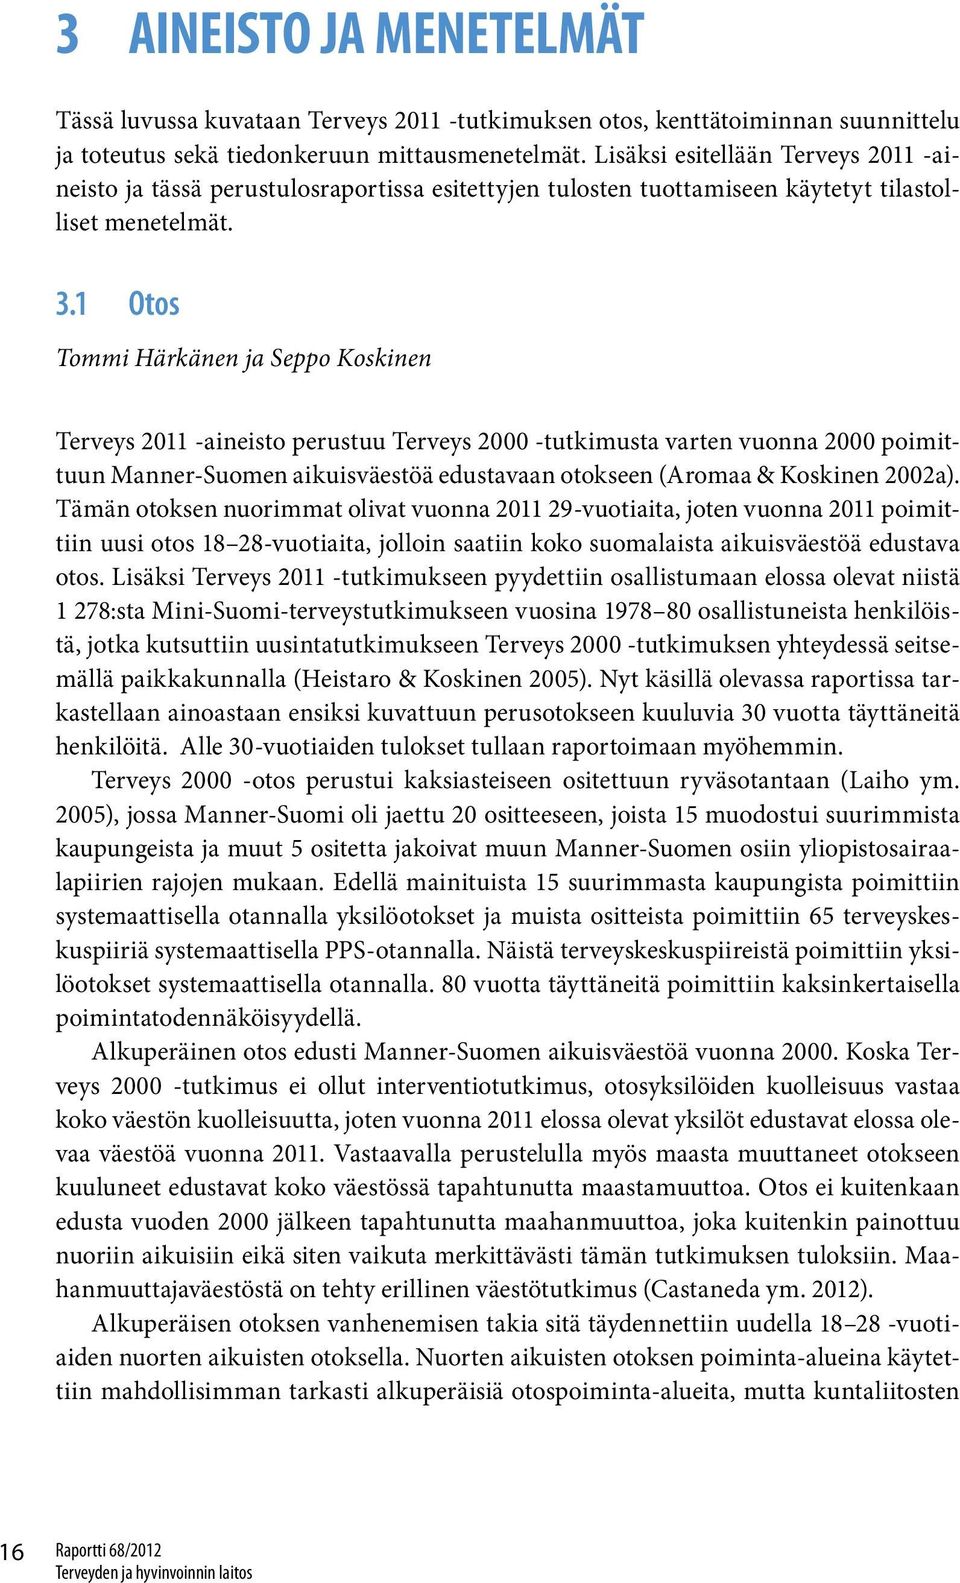 1 Otos Tommi Härkänen ja Seppo Koskinen Terveys 2011 -aineisto perustuu Terveys 2000 -tutkimusta varten vuonna 2000 poimittuun Manner-Suomen aikuisväestöä edustavaan otokseen (Aromaa & Koskinen